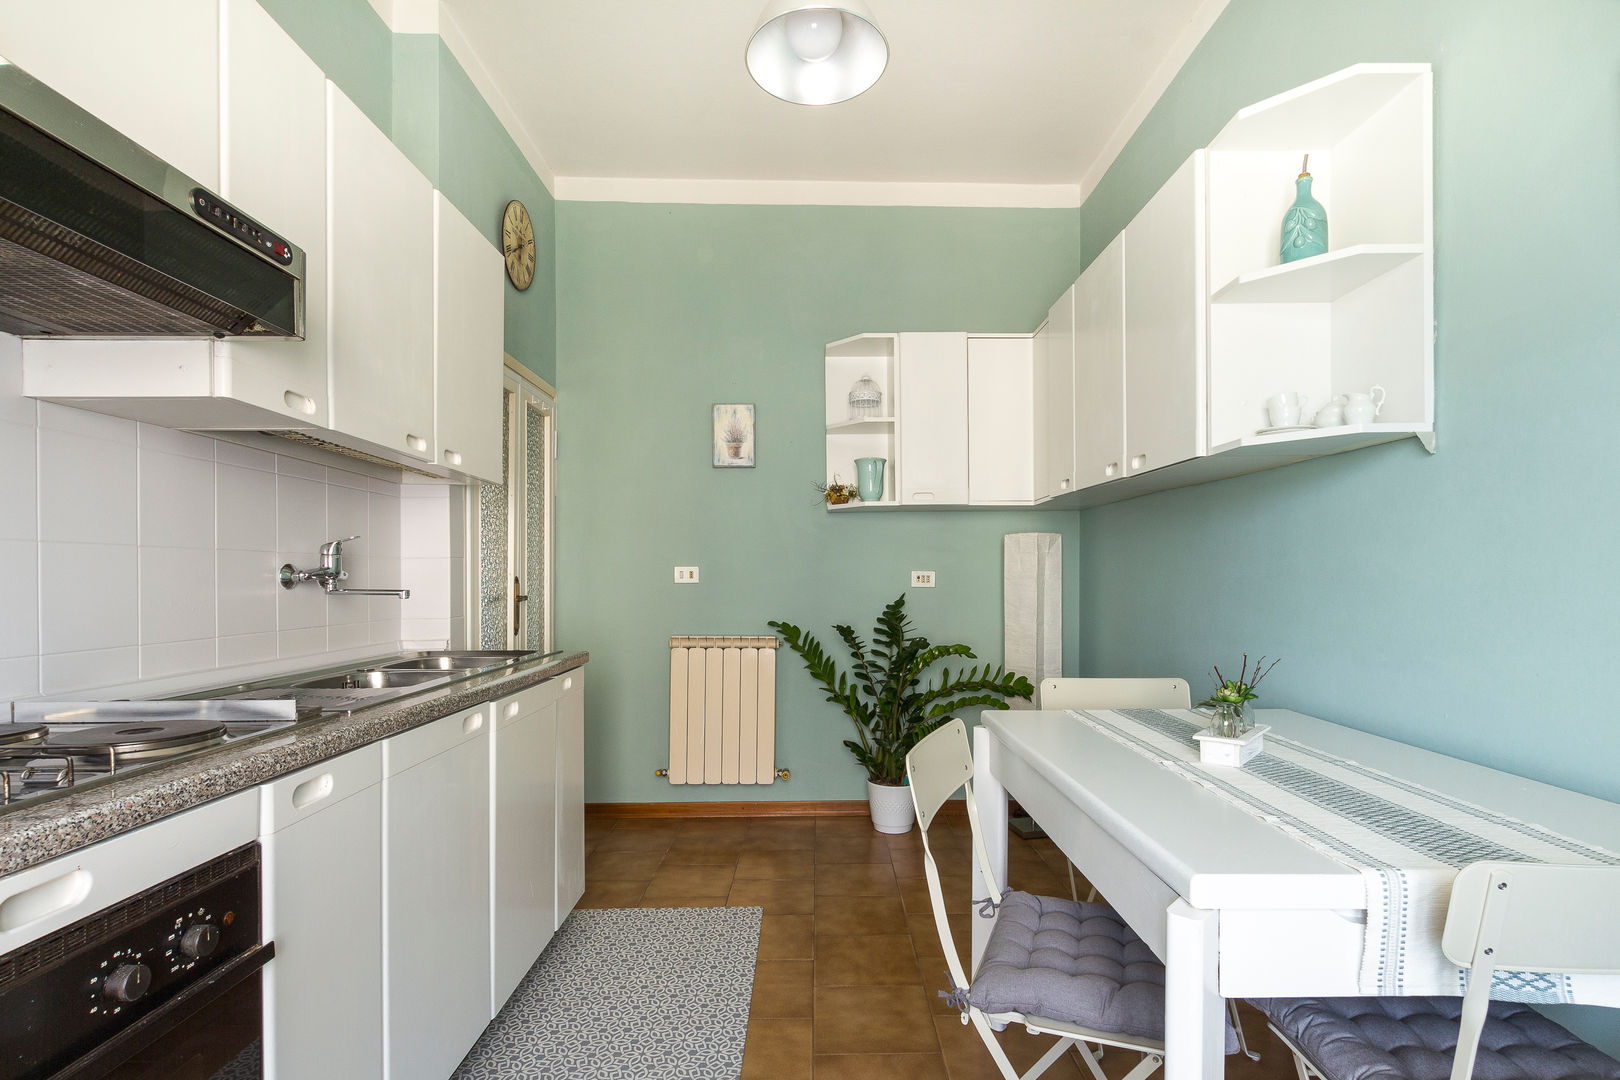 Homestaging Project - Via degli Albizi, sumansainihomestaging sumansainihomestaging Small kitchens